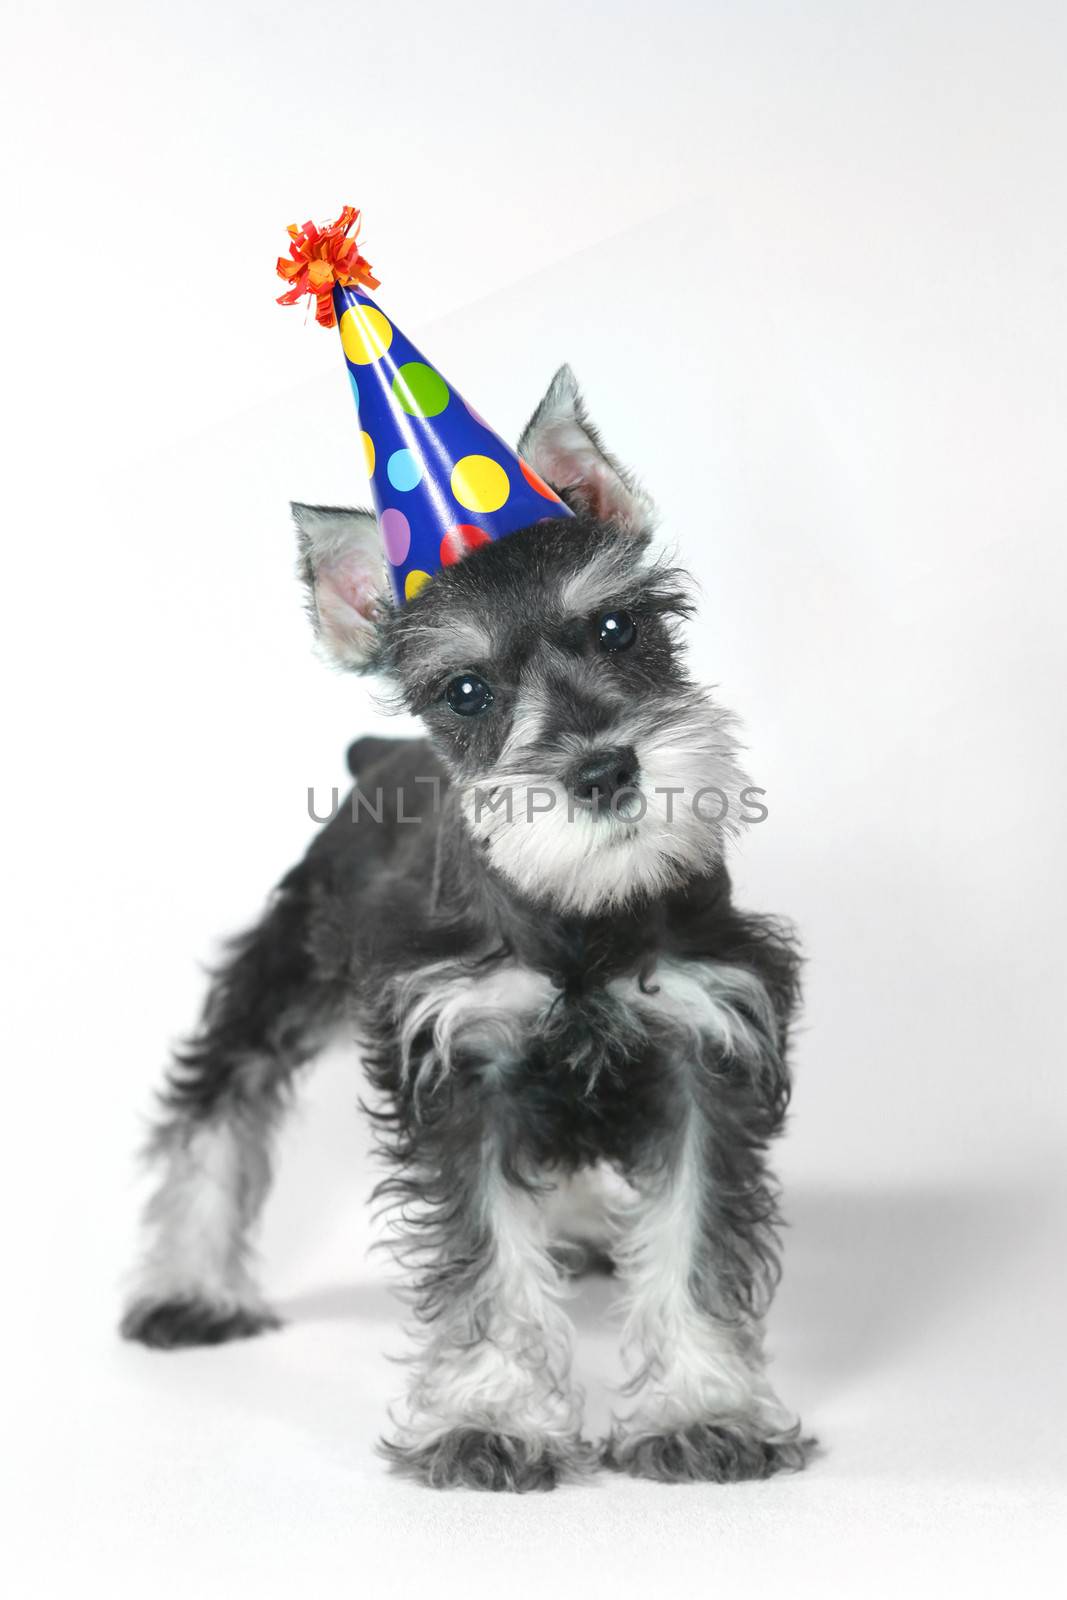 Birthday Celebrating Baby Miniature Schnauzer Puppy Dog on White